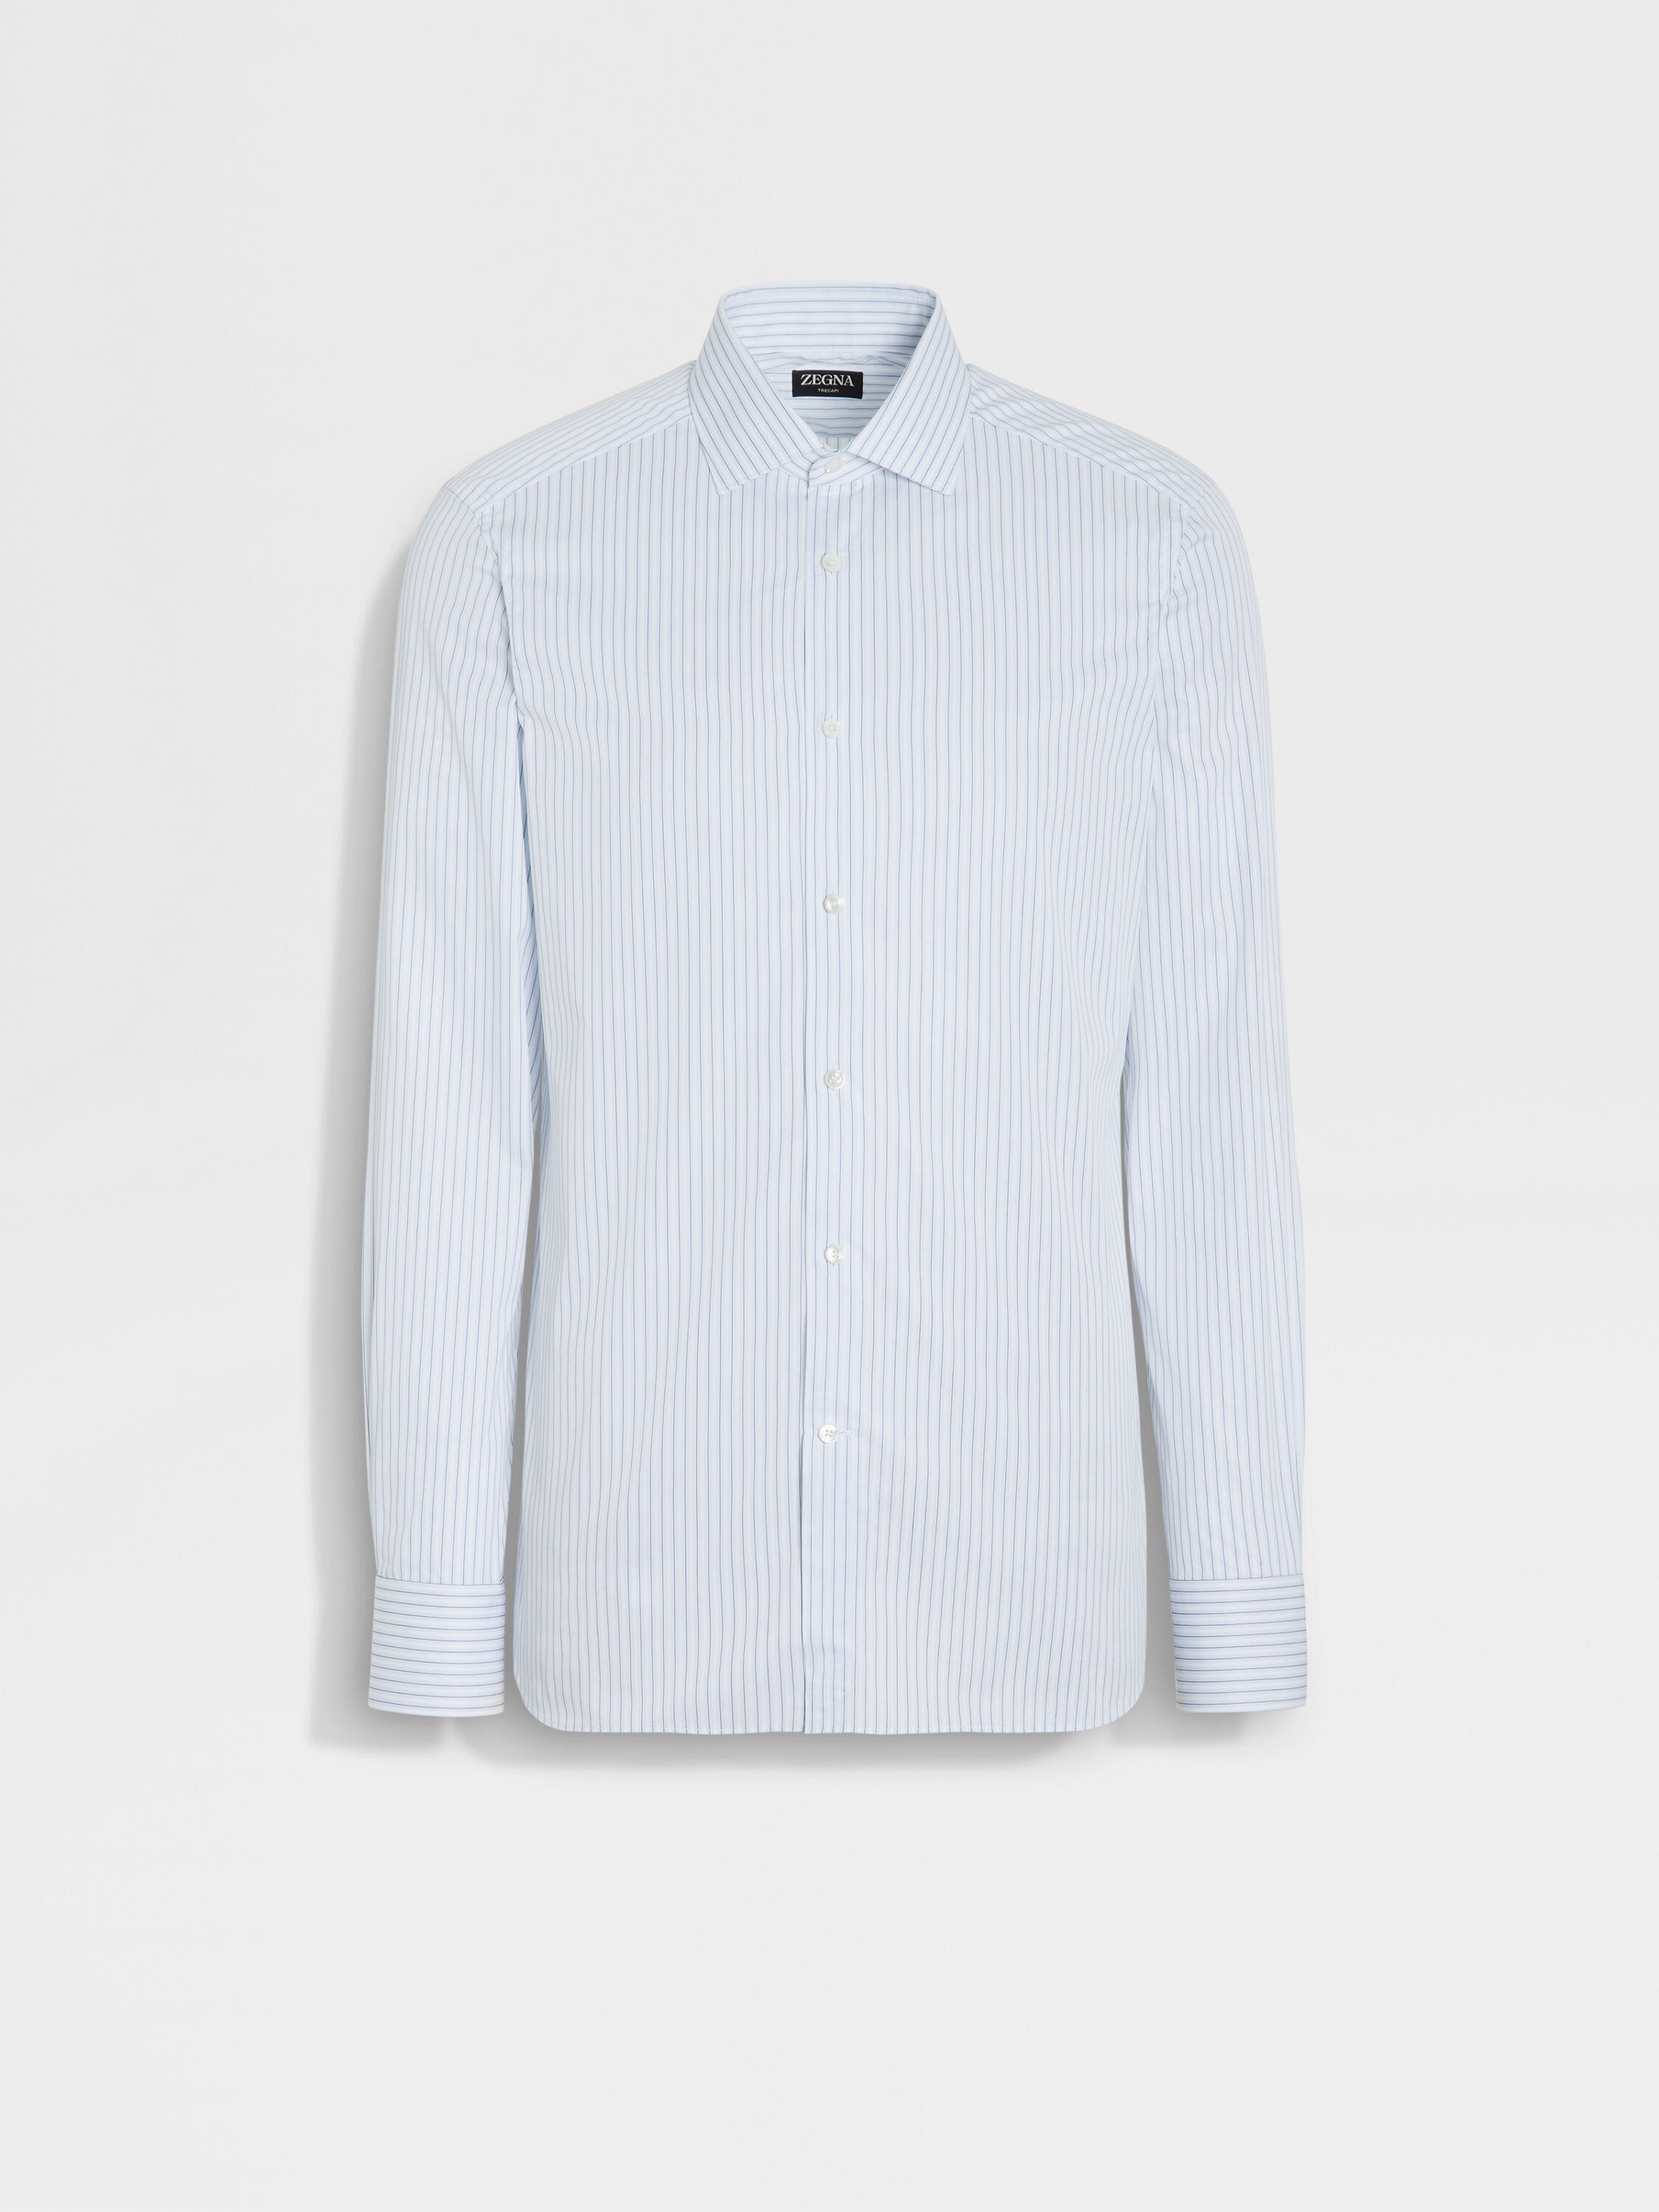 Light Blue Navy Blue and White Striped Trecapi Cotton Shirt